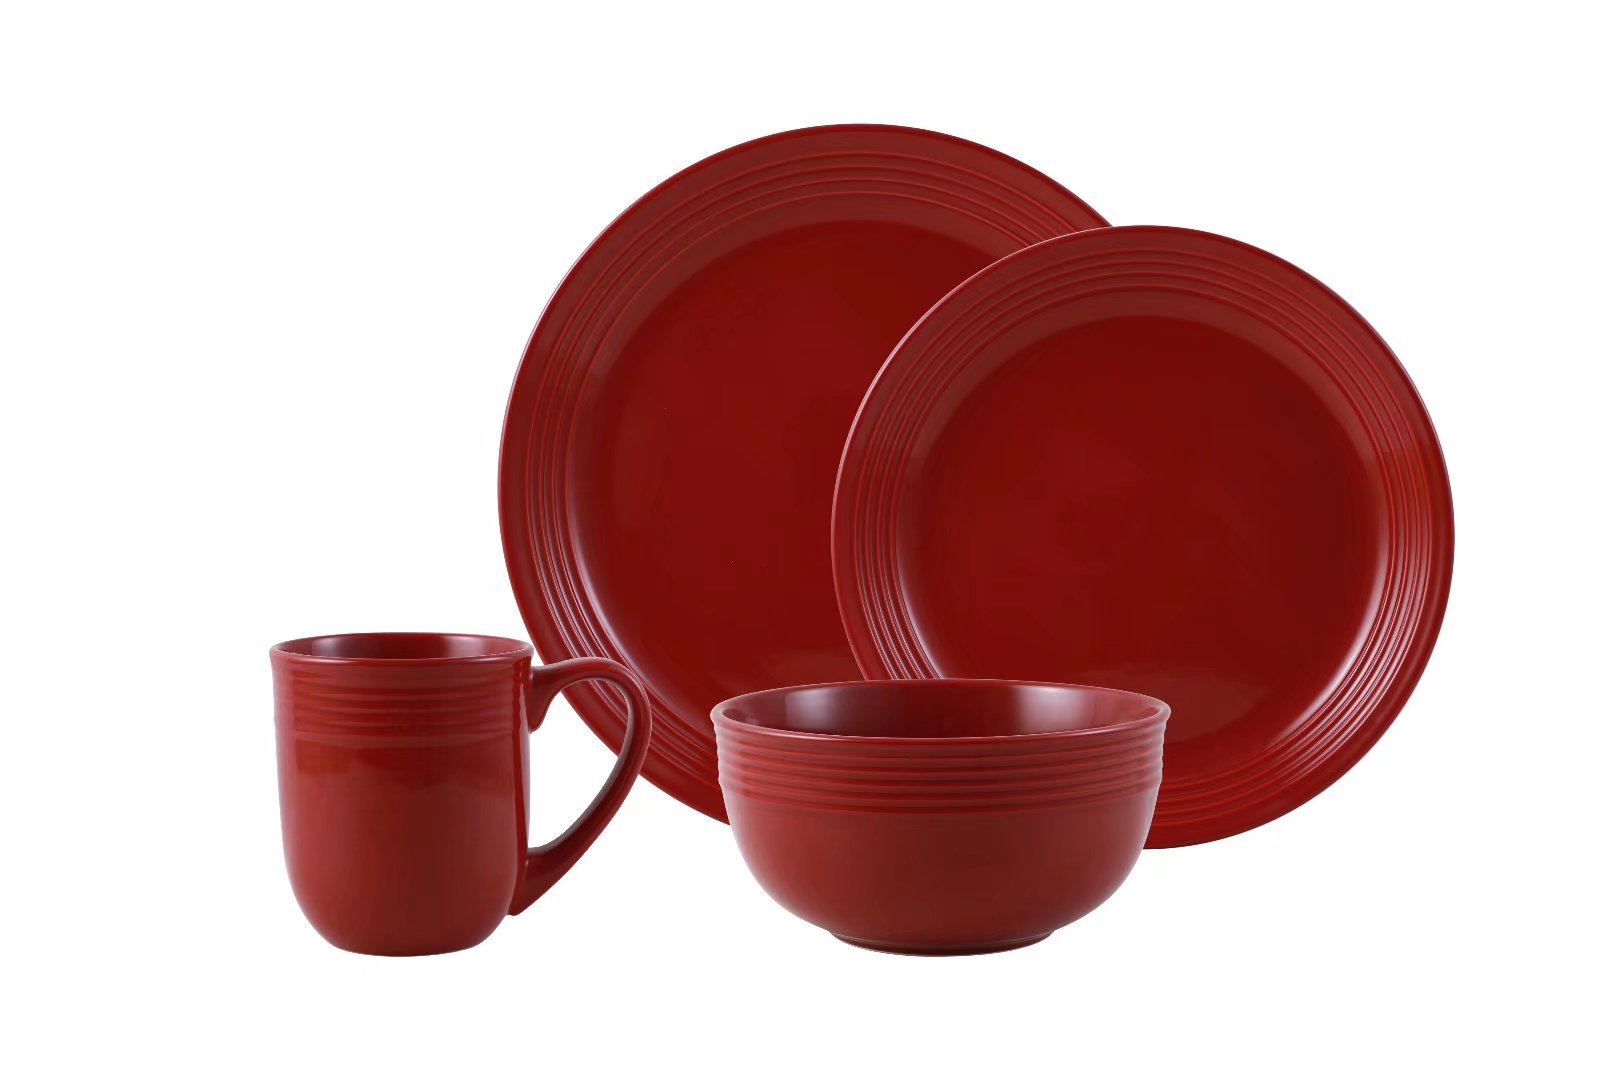 Mainstays Chiara Red Stoneware Dinnerware Set, 16-Pieces - image 1 of 10